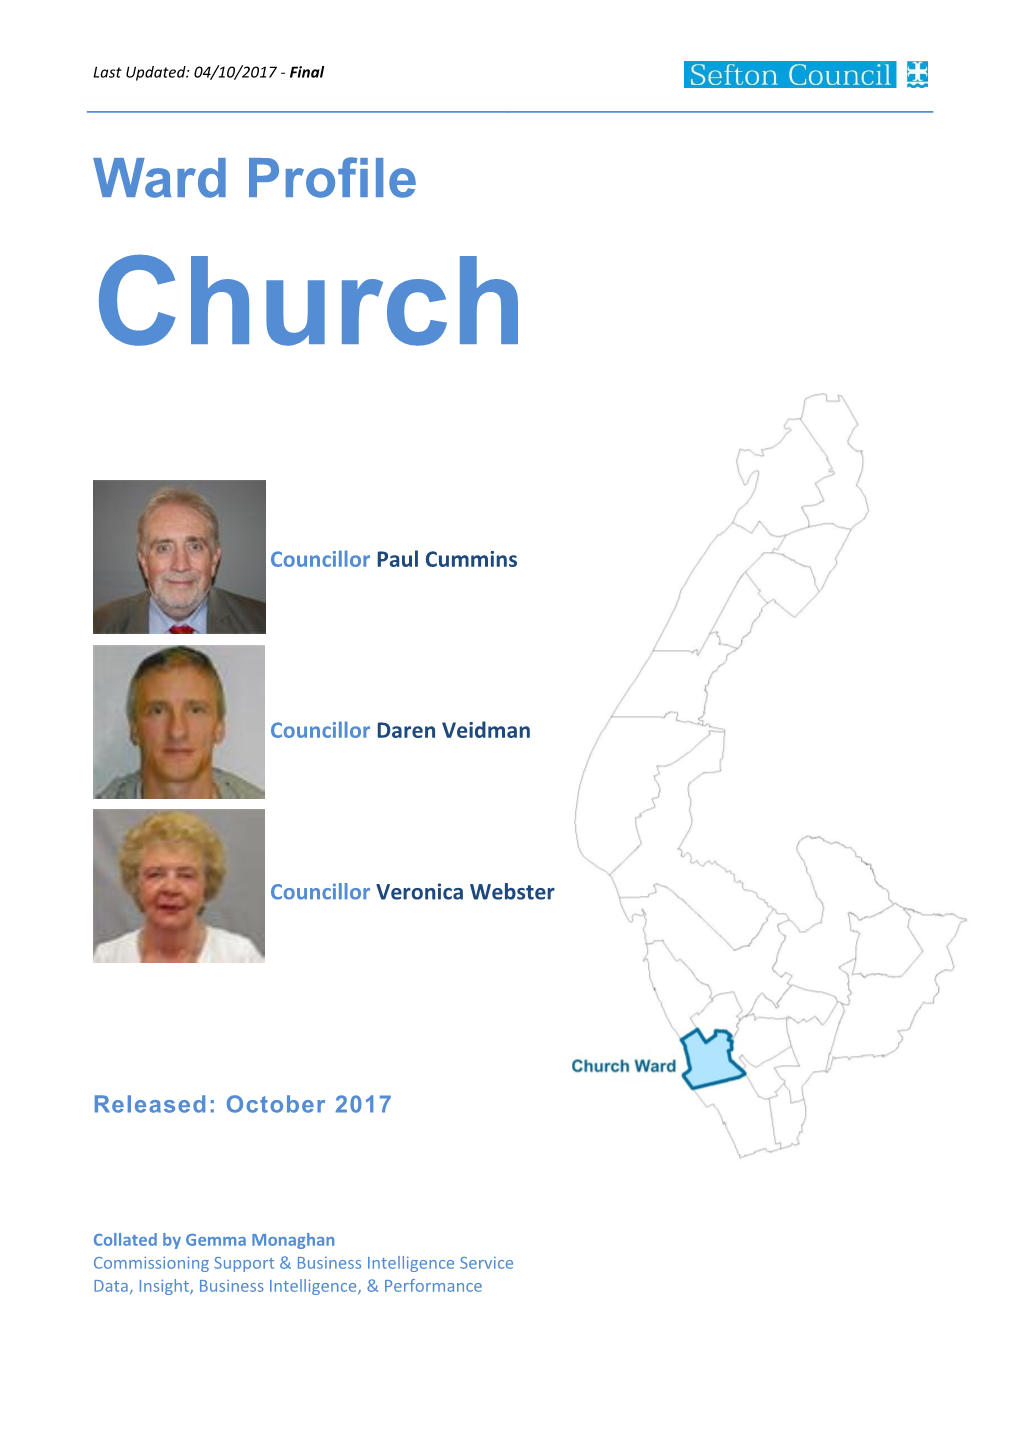 Church Ward Profile